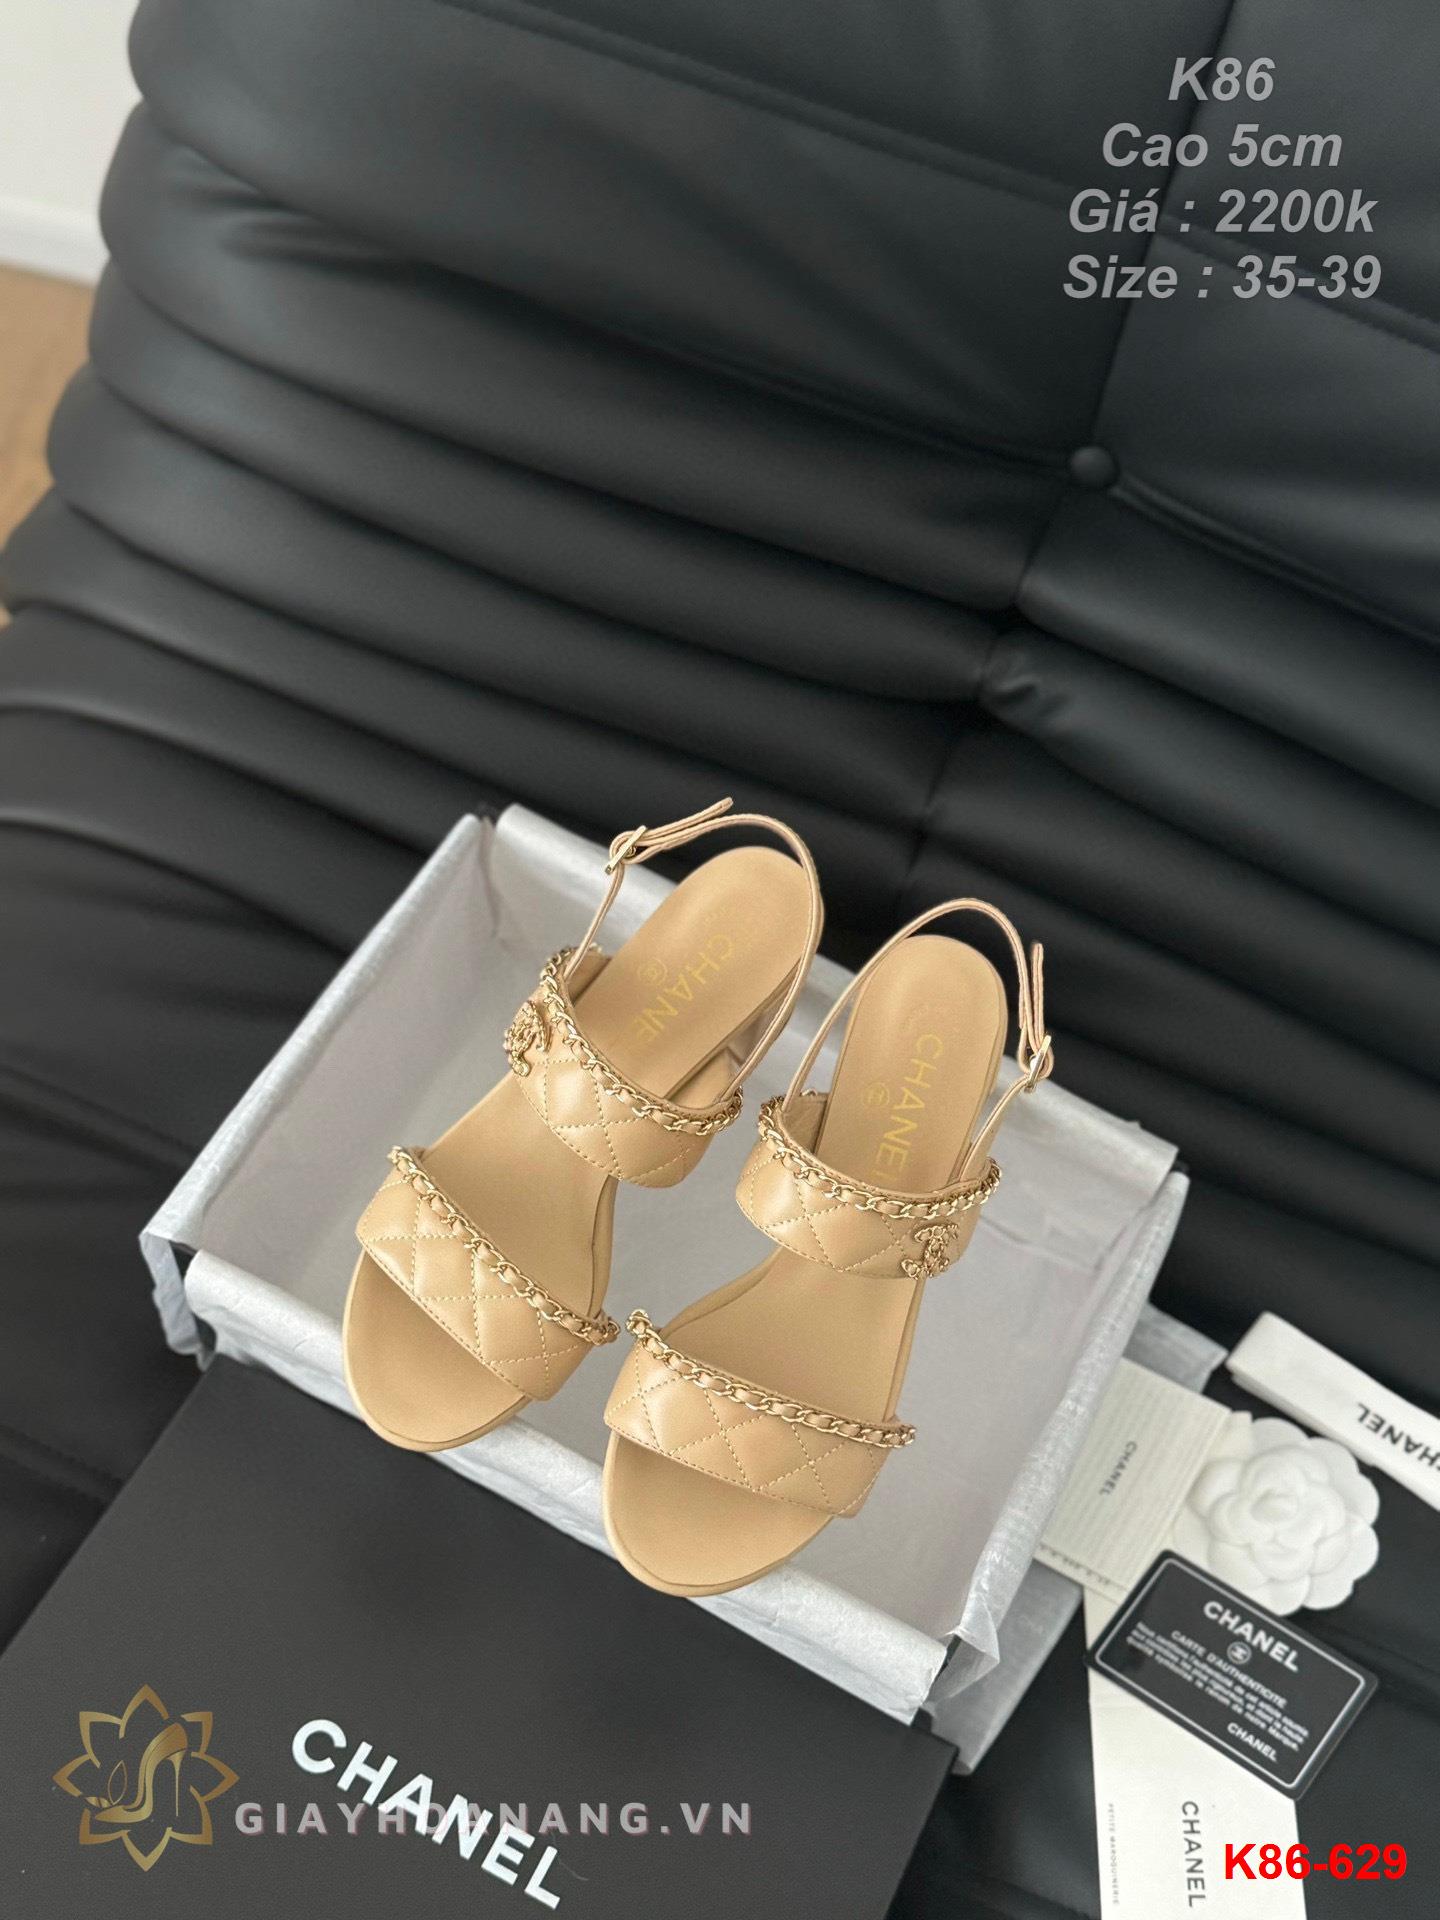 K86-629 Chanel sandal cao gót 5cm siêu cấp